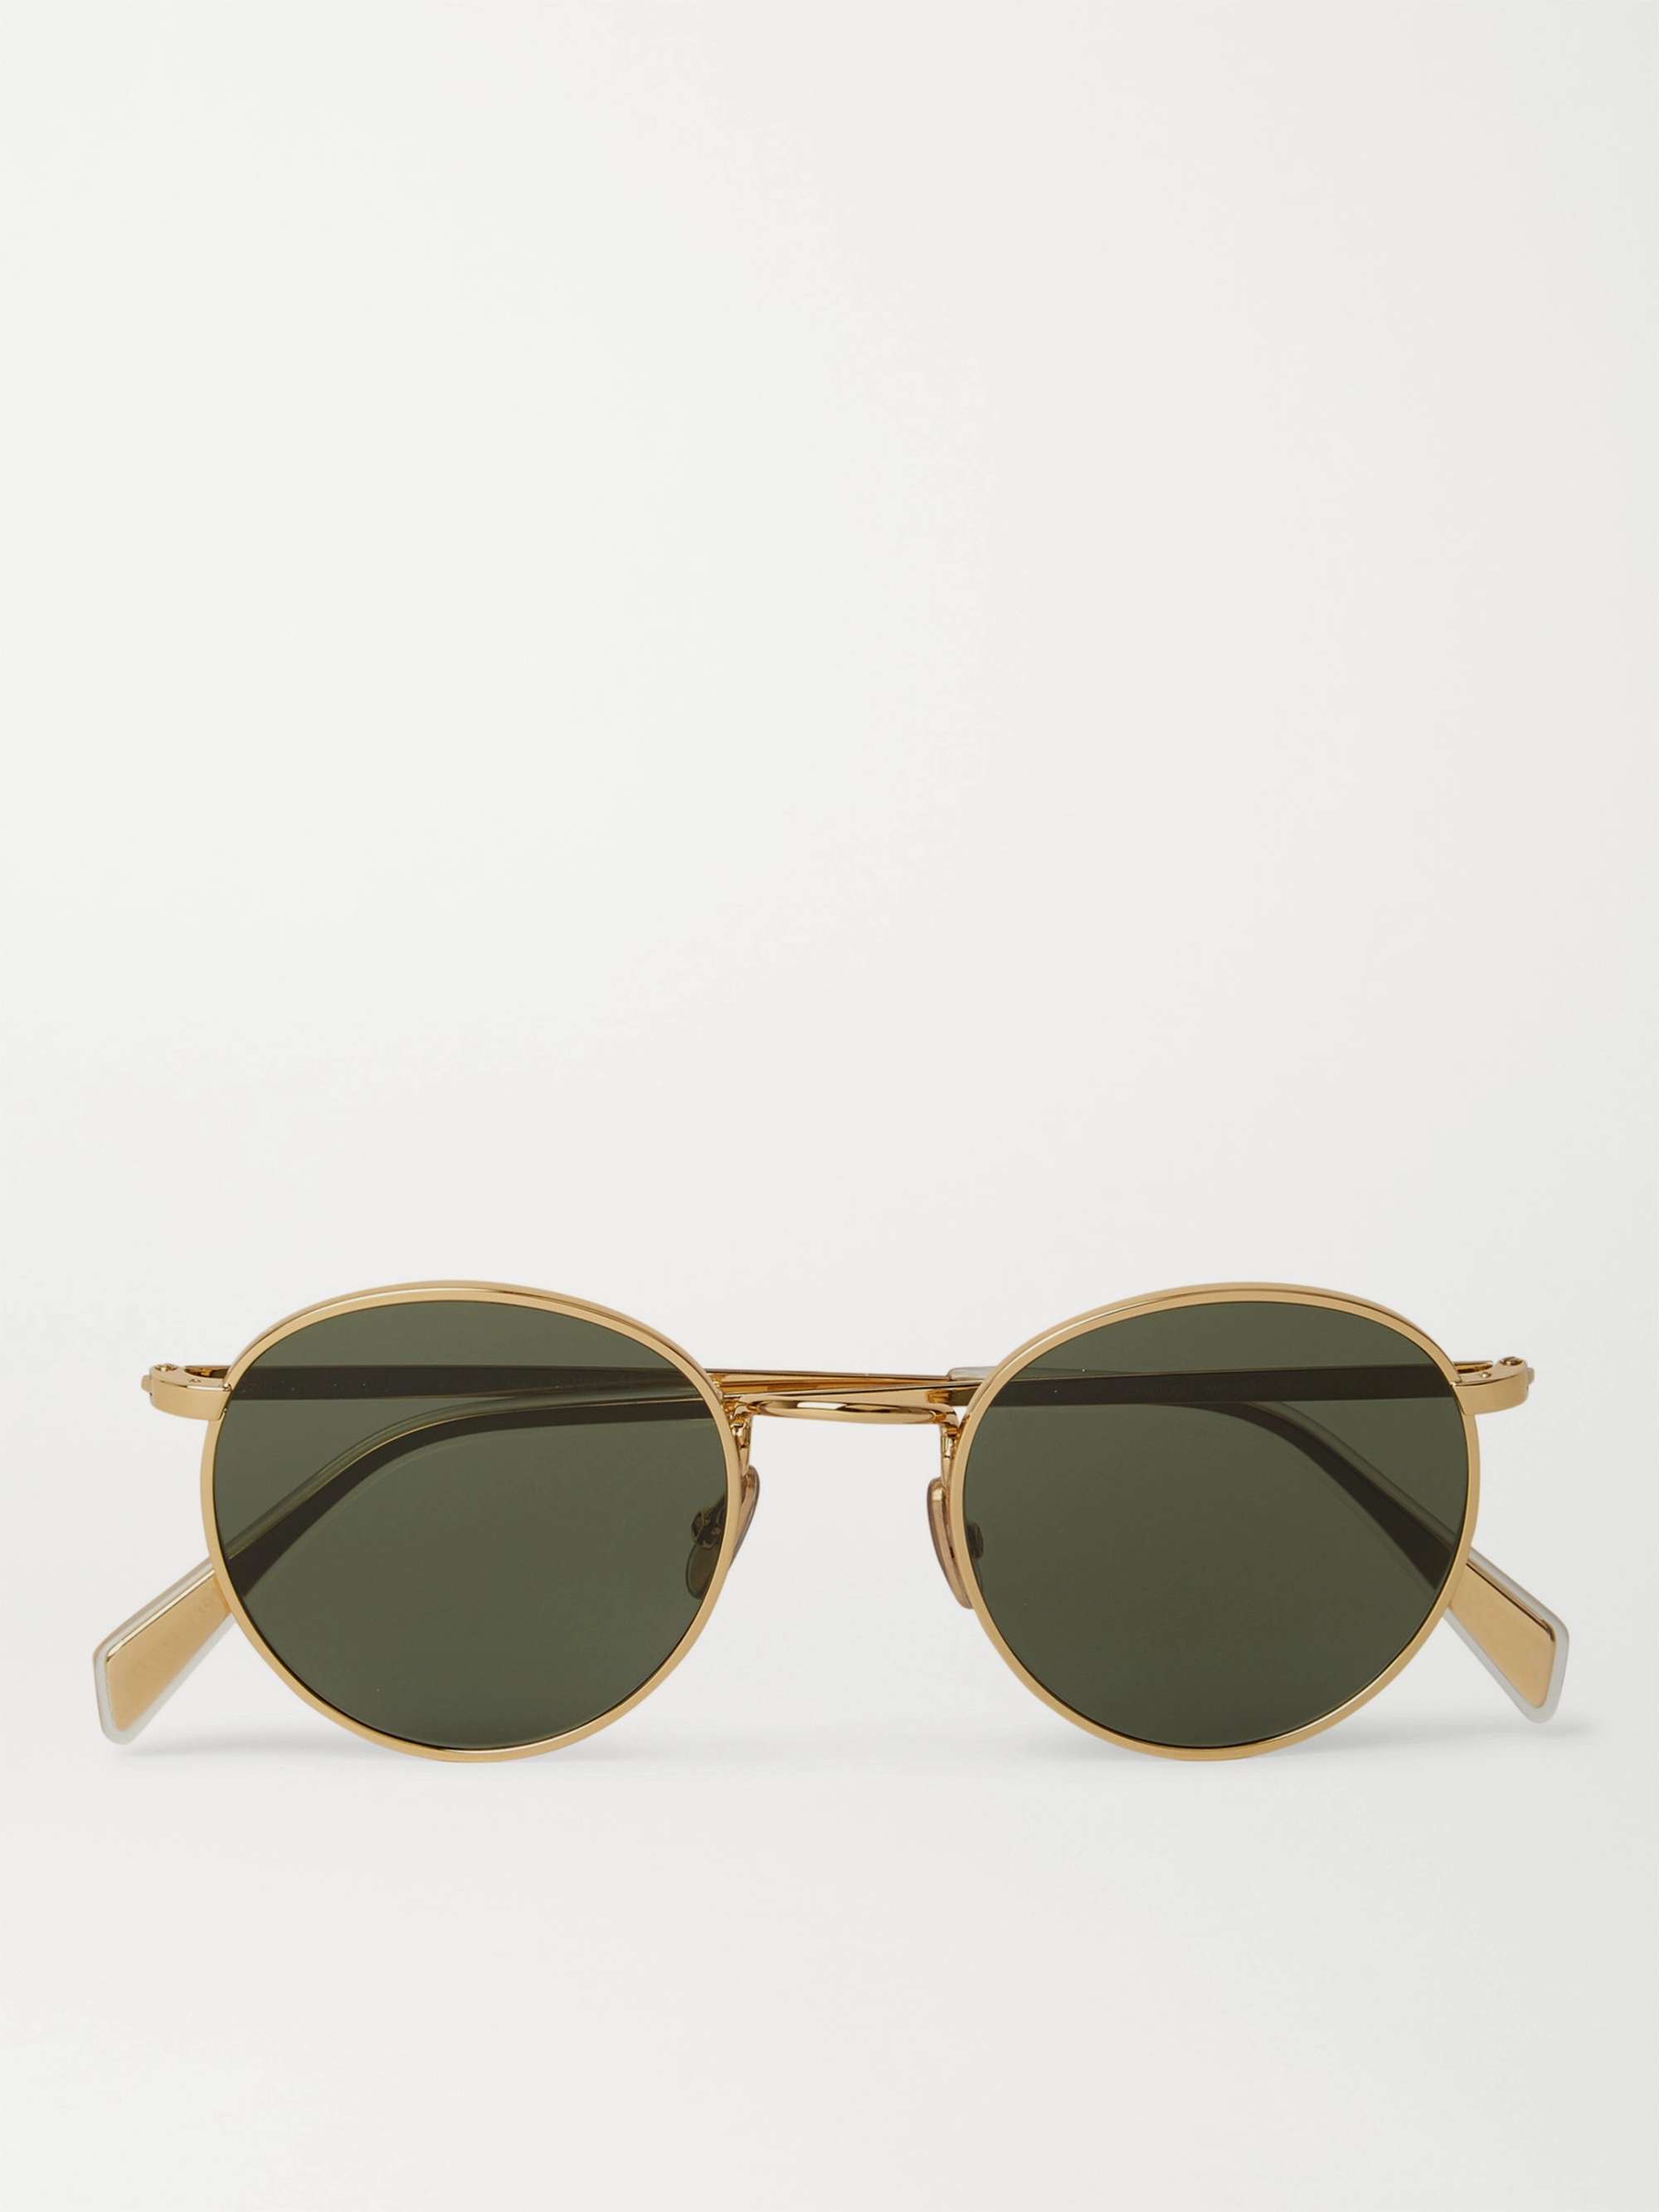 CELINE HOMME Round-Frame Gold-Tone Sunglasses for Men | MR PORTER